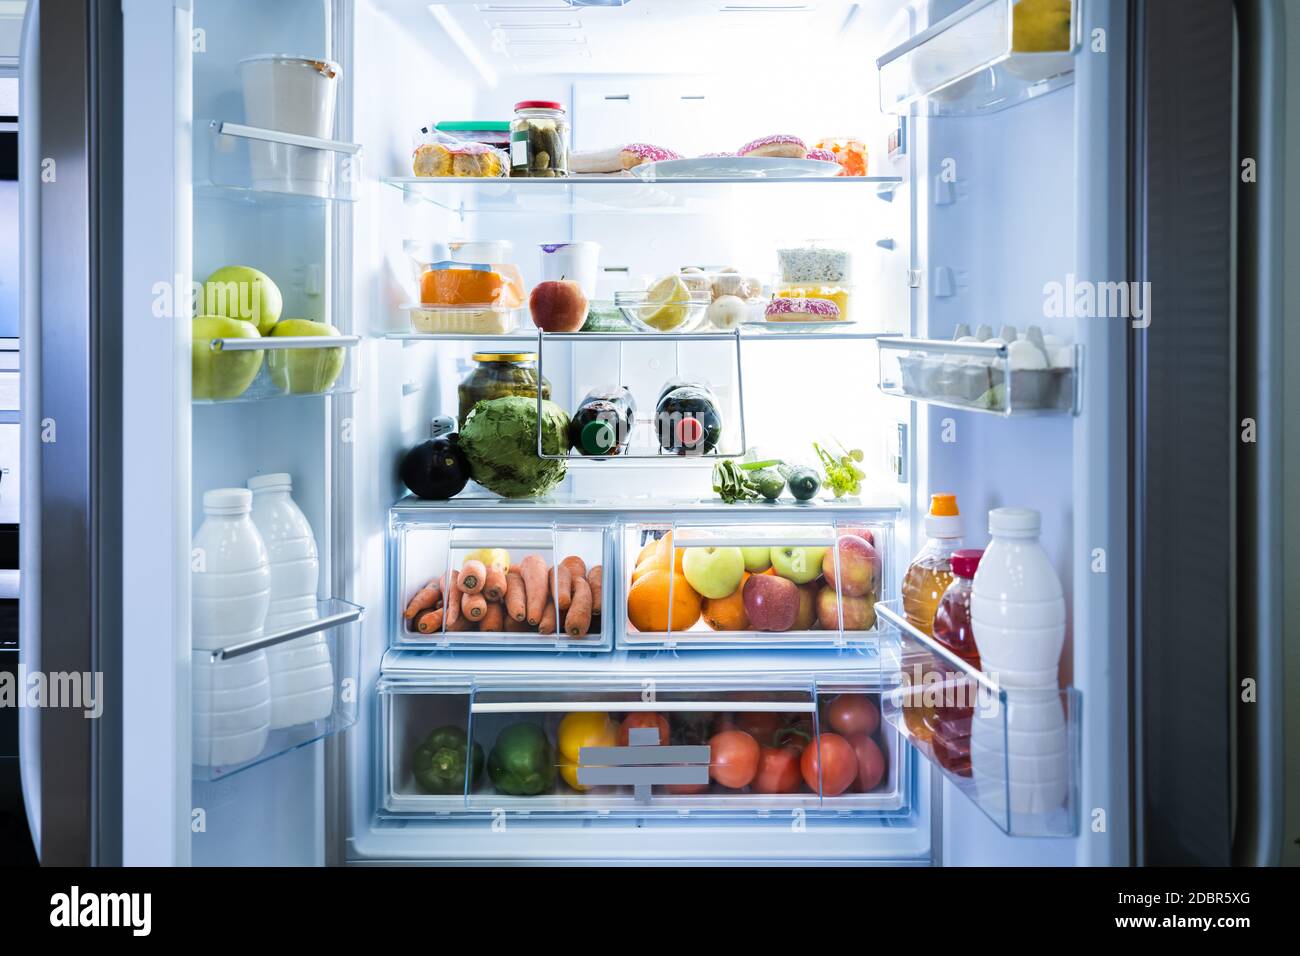 Open Refrigerator Or Fridge Door With Food Inside Stock Photo